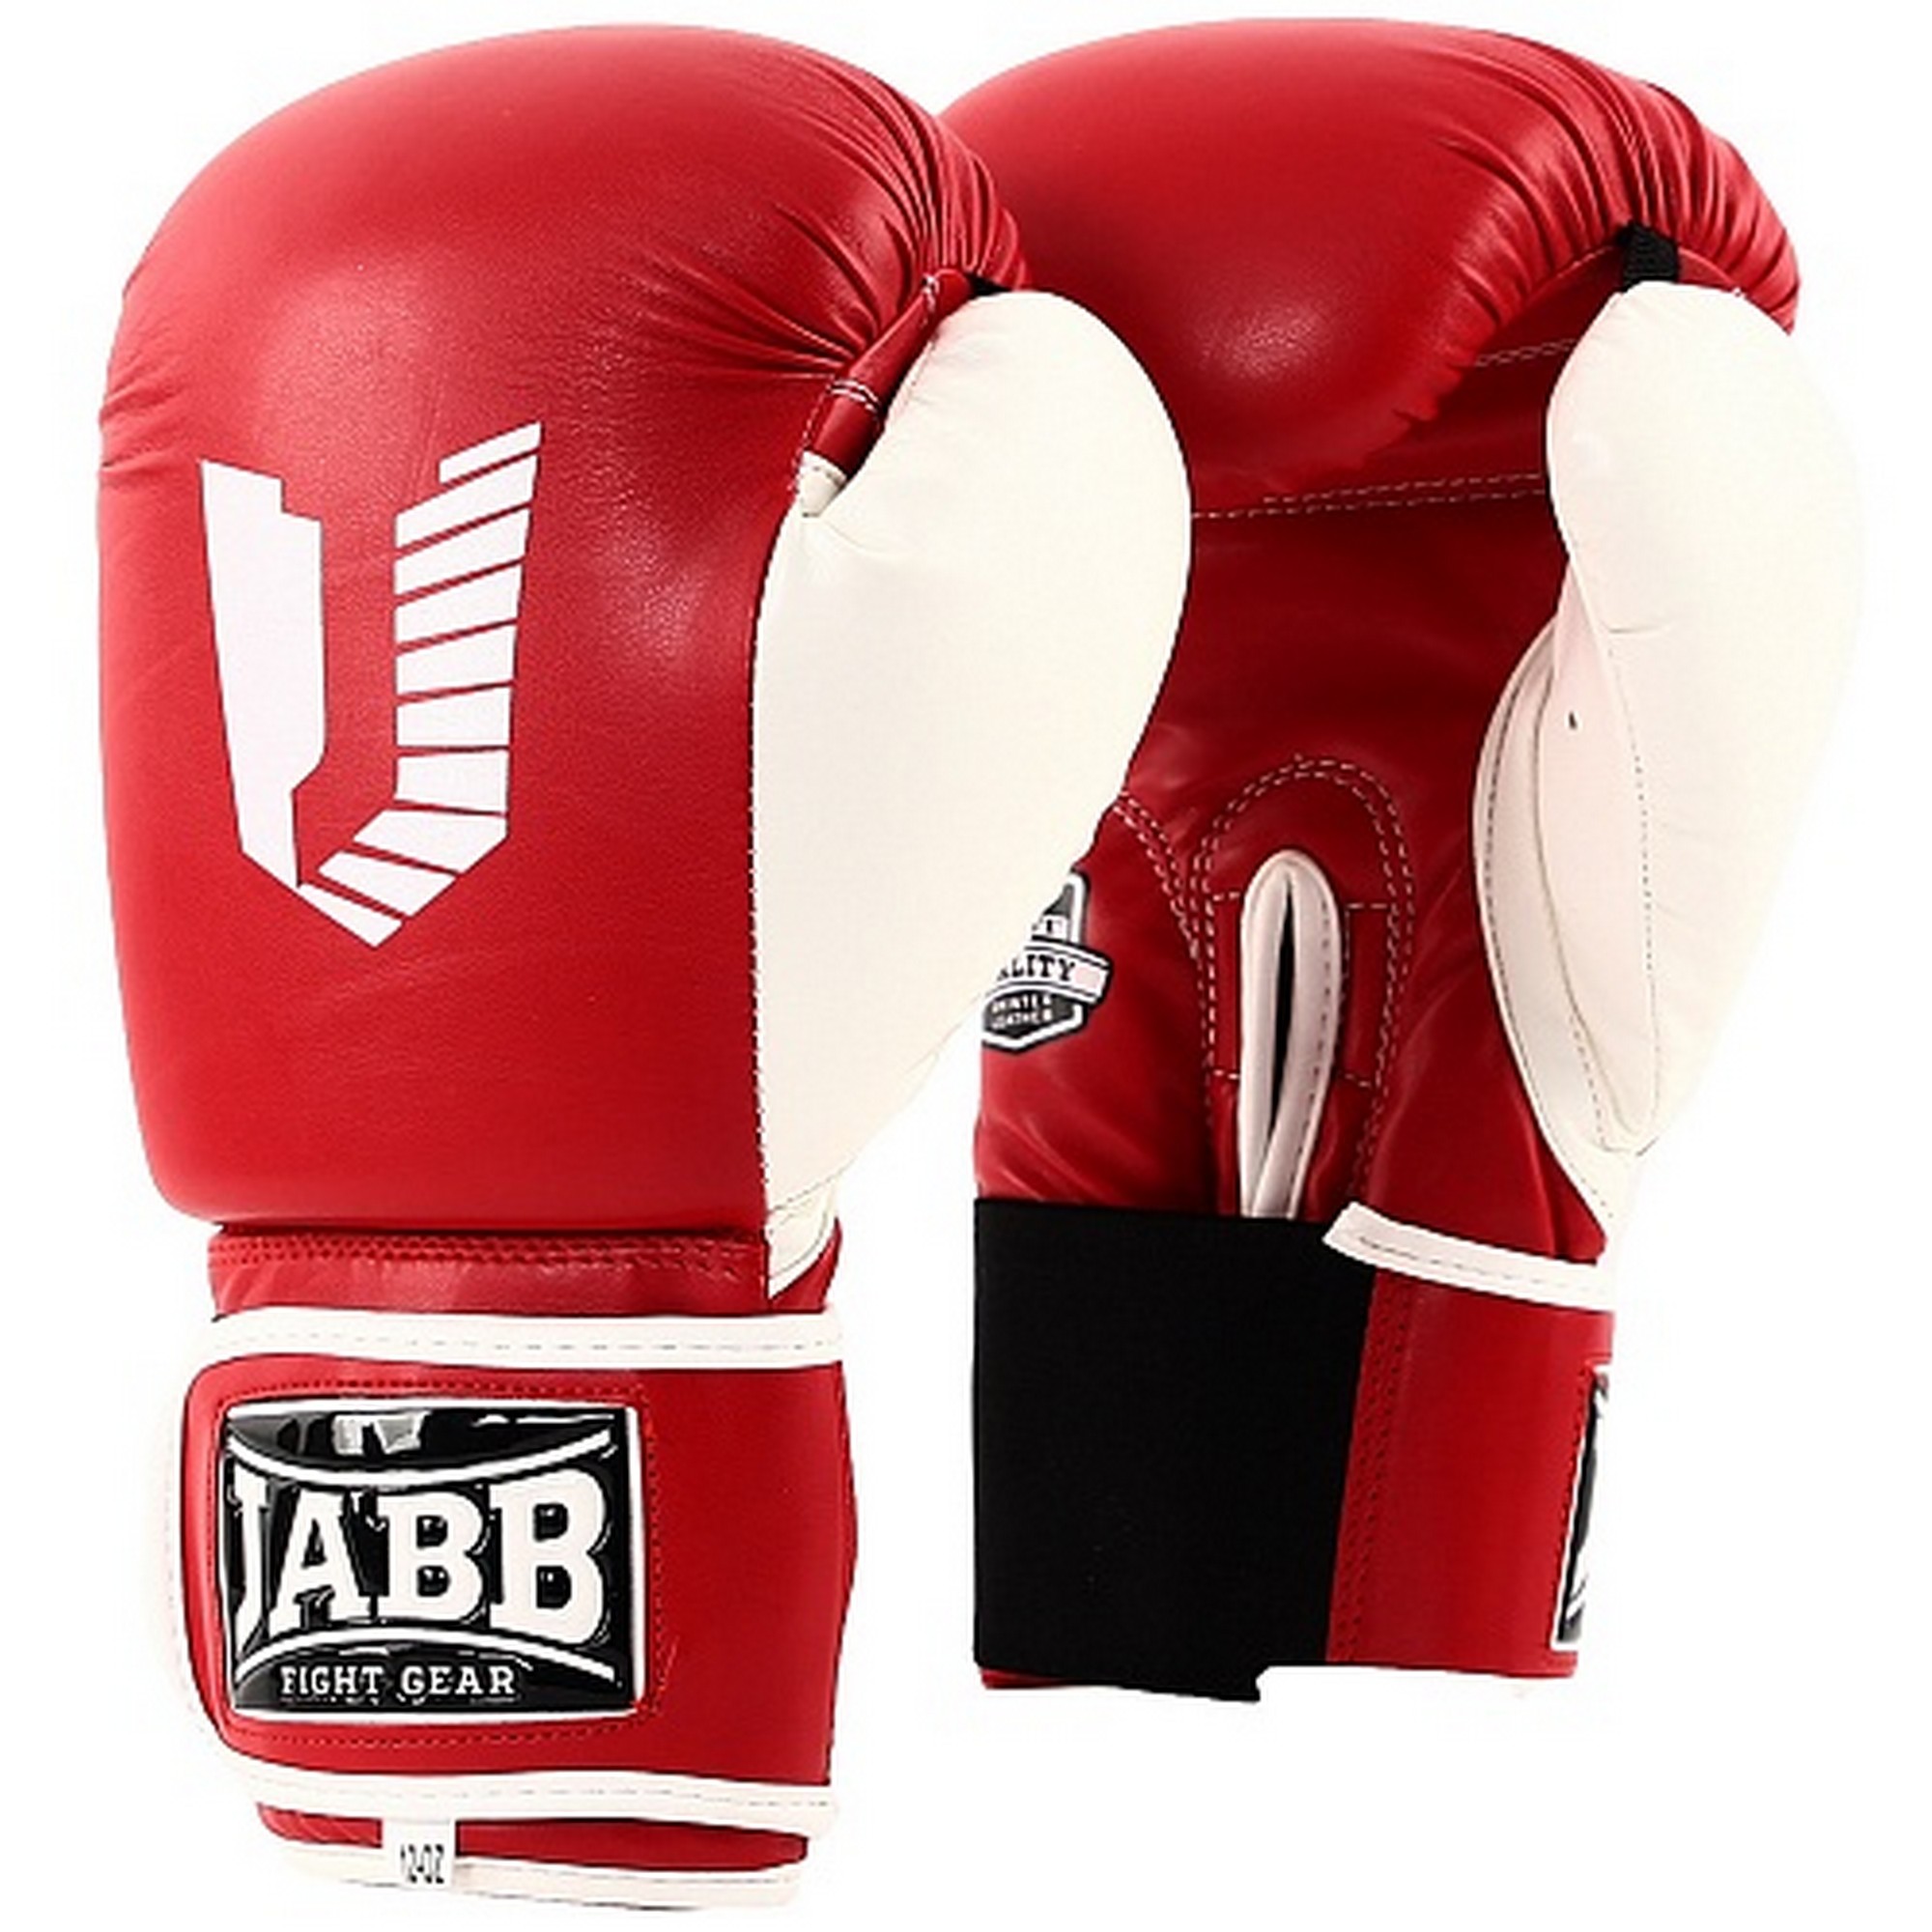 Перчатки боксерские (иск.кожа) 6ун Jabb JE-4056/Eu 56 красный\белый 2000_2000